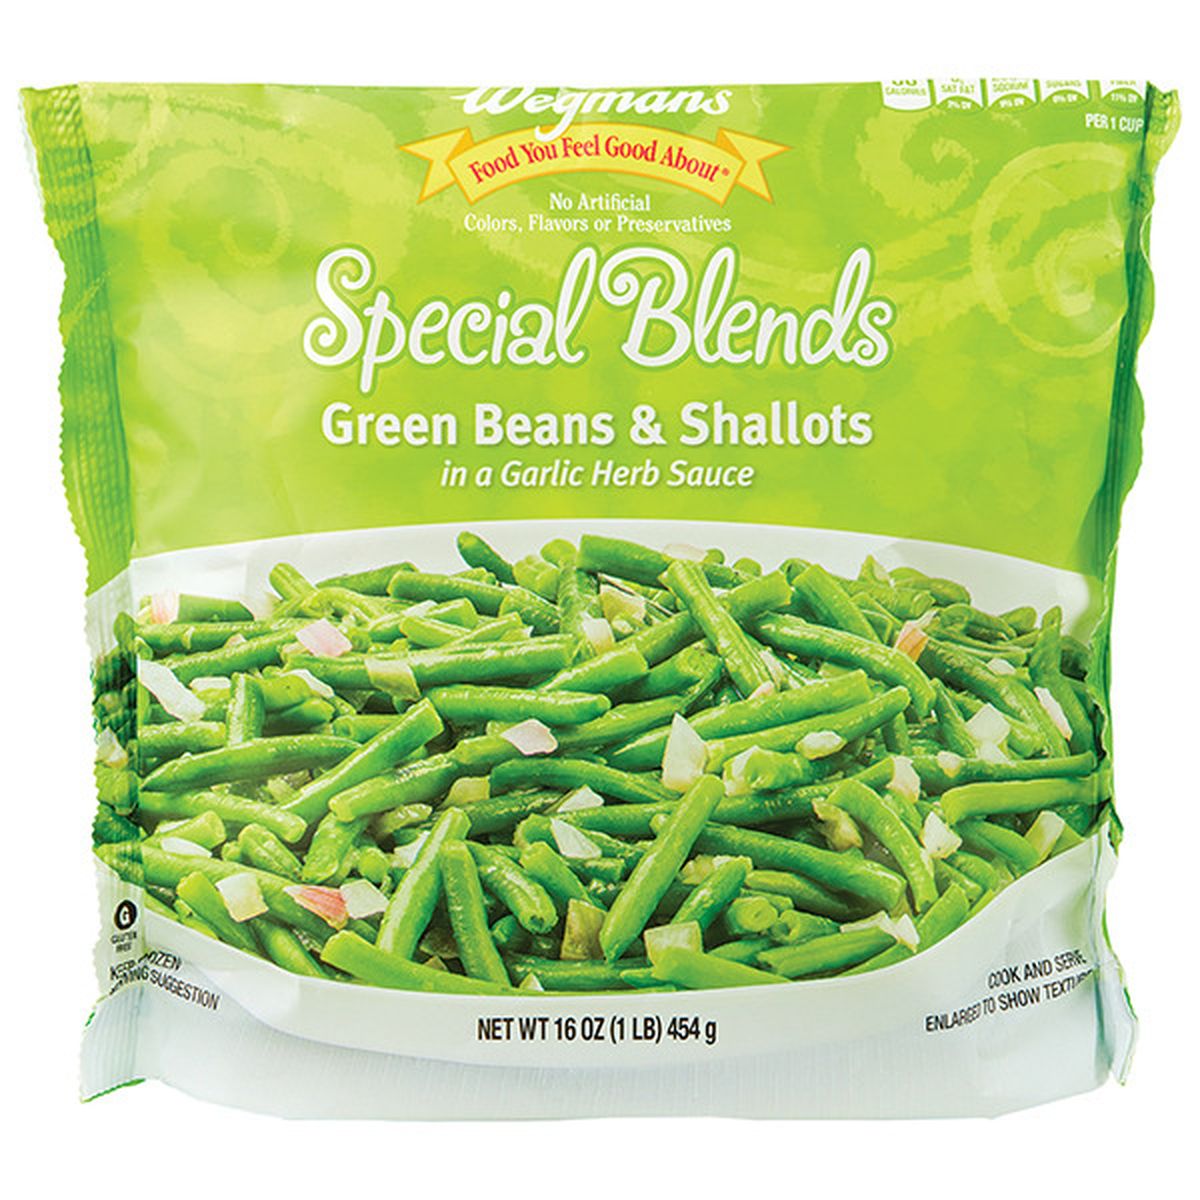 Calories in Wegmans Special Blends Green Beans & Shallots in a Garlic Herb Sauce